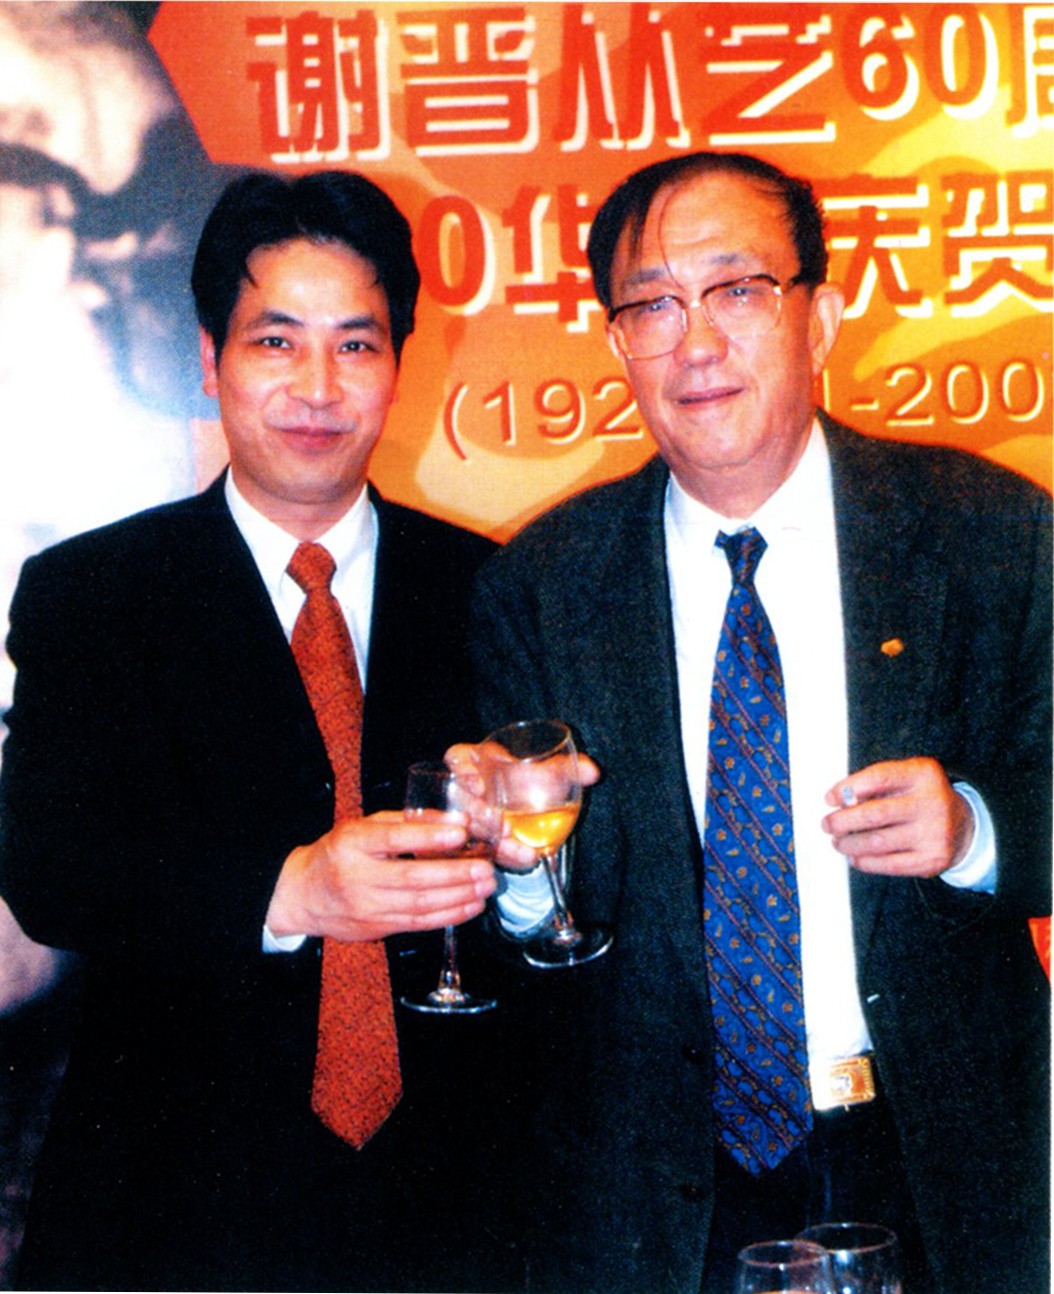 6-这是谢晋从艺60周年时在绍兴饭店的庆典仪式（左一为绍兴饭店董事长）.jpg